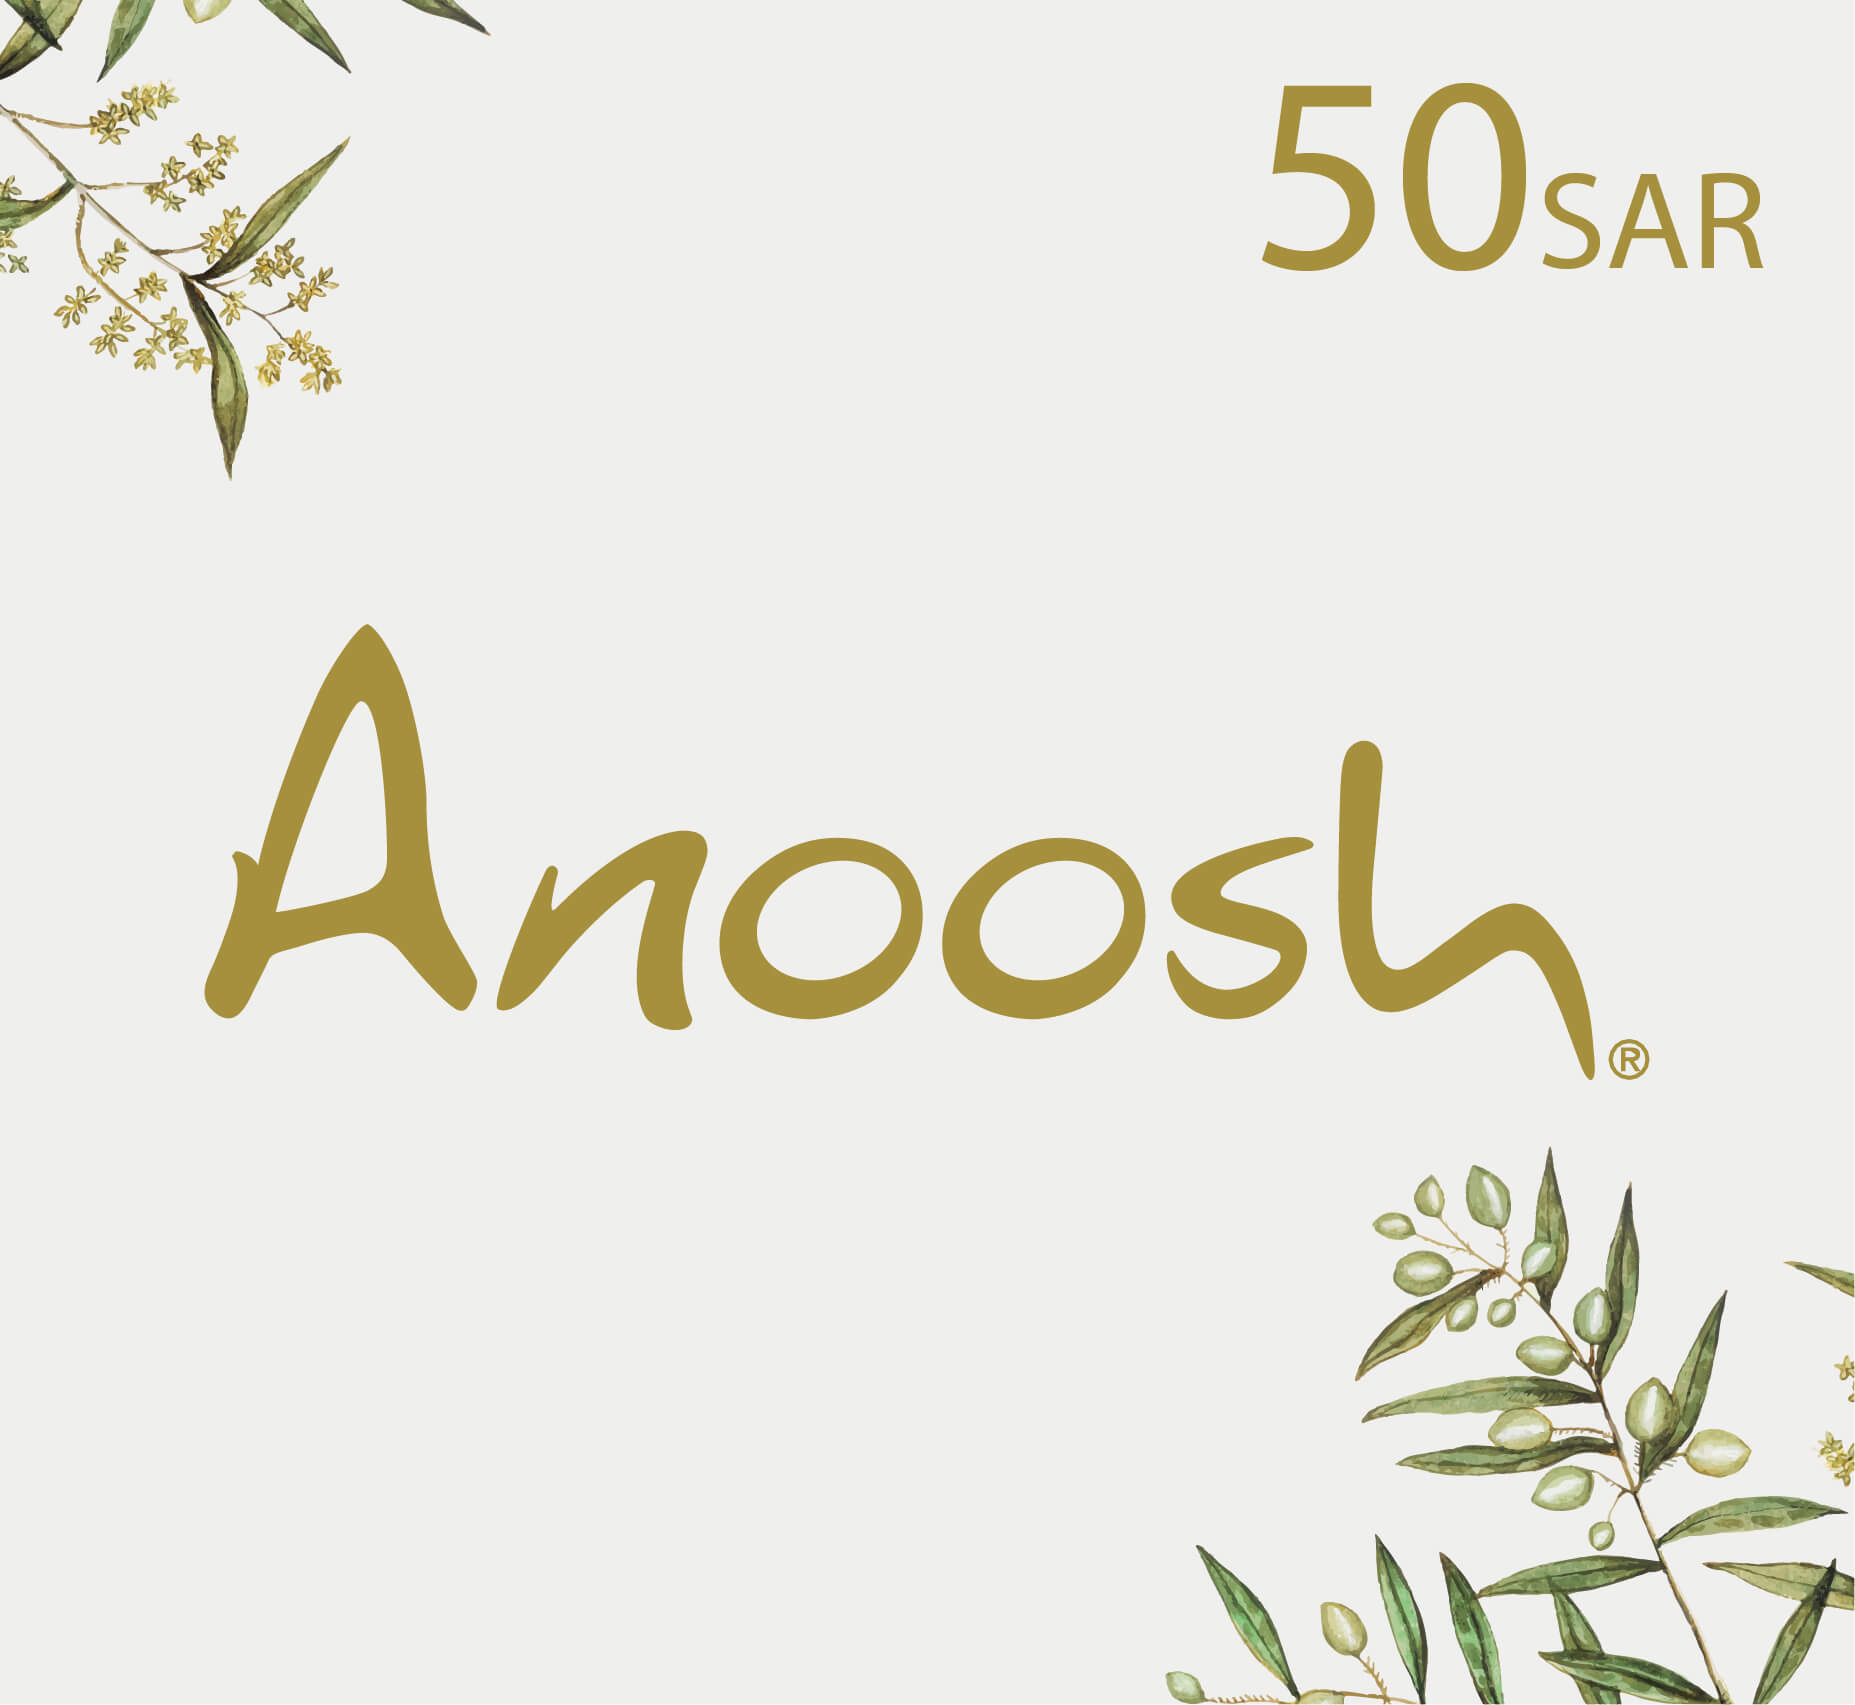 شراء بطاقة هدايا أنوش Anoosh - قسيمة شراء أنوش - 50 ريال